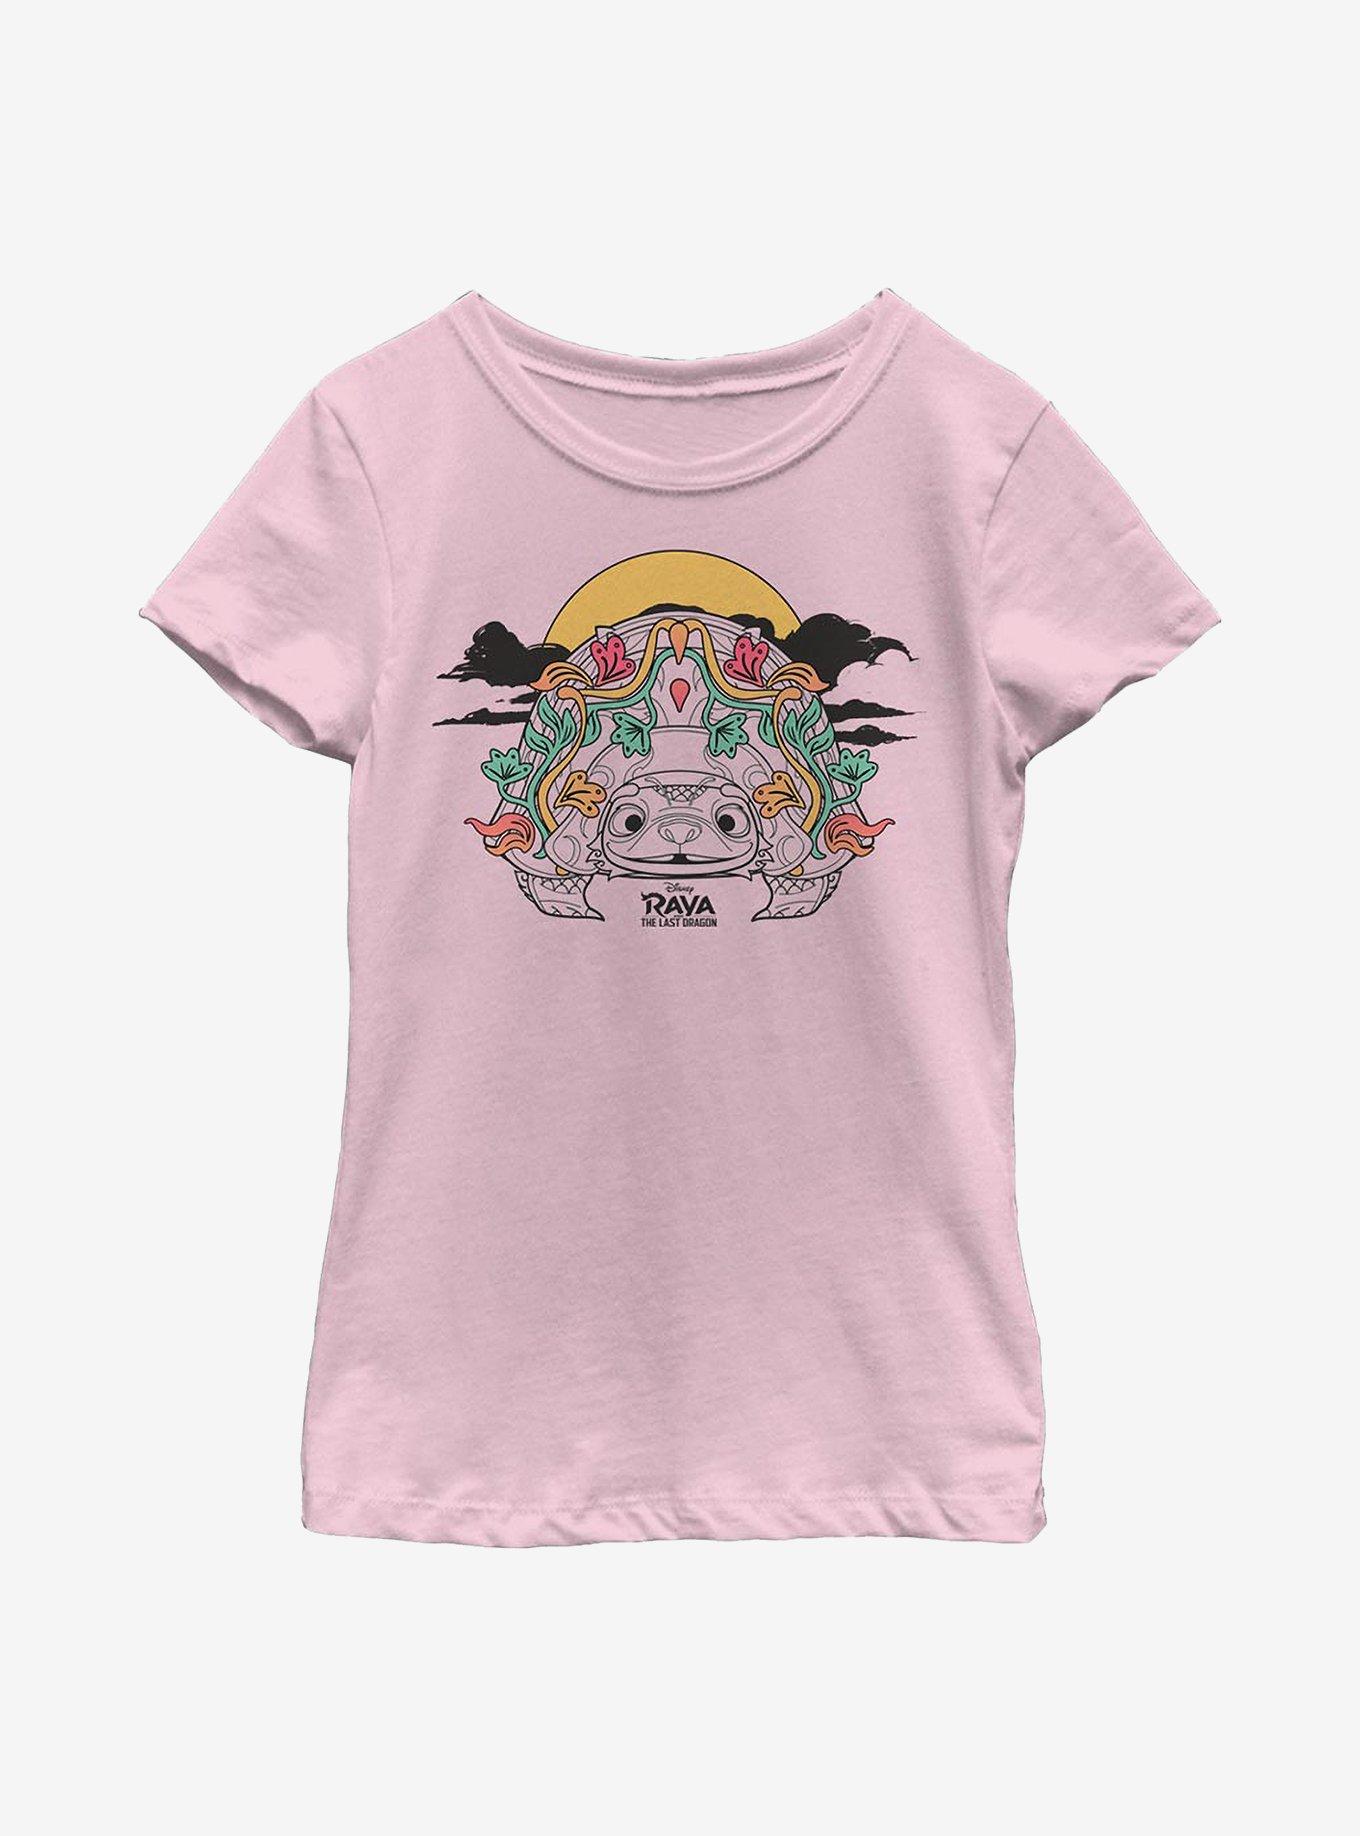 Disney Raya And The Last Dragon Bright Tuk Tuk Youth Girls T-Shirt, PINK, hi-res